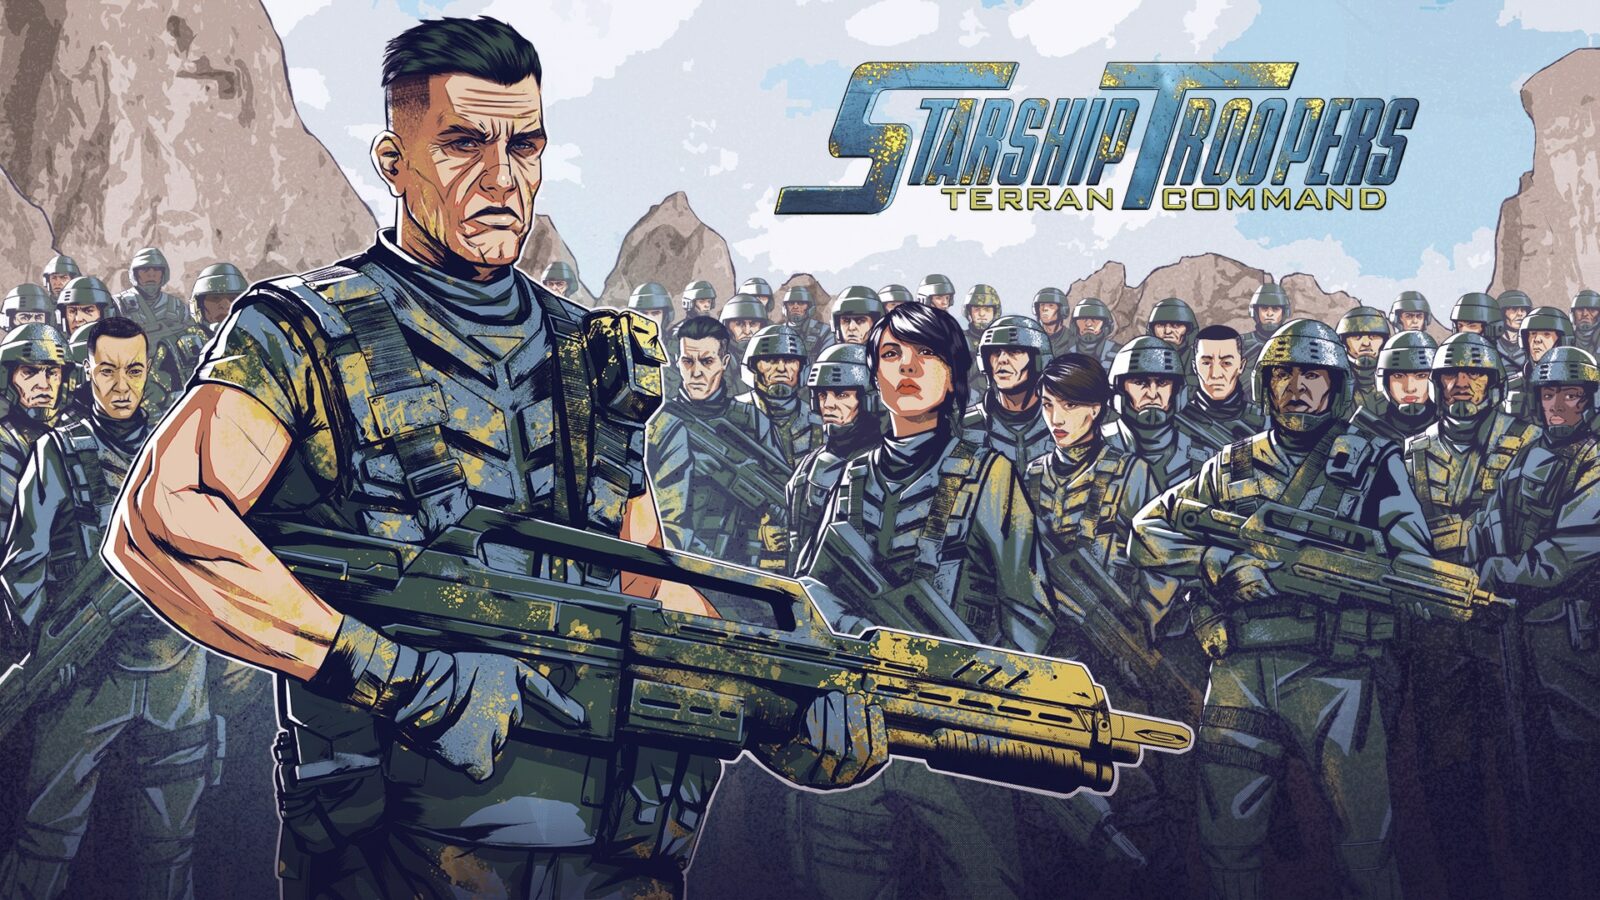 Posticipata al 16 giugno l’uscita di Starship Troopers: Terran Command thumbnail